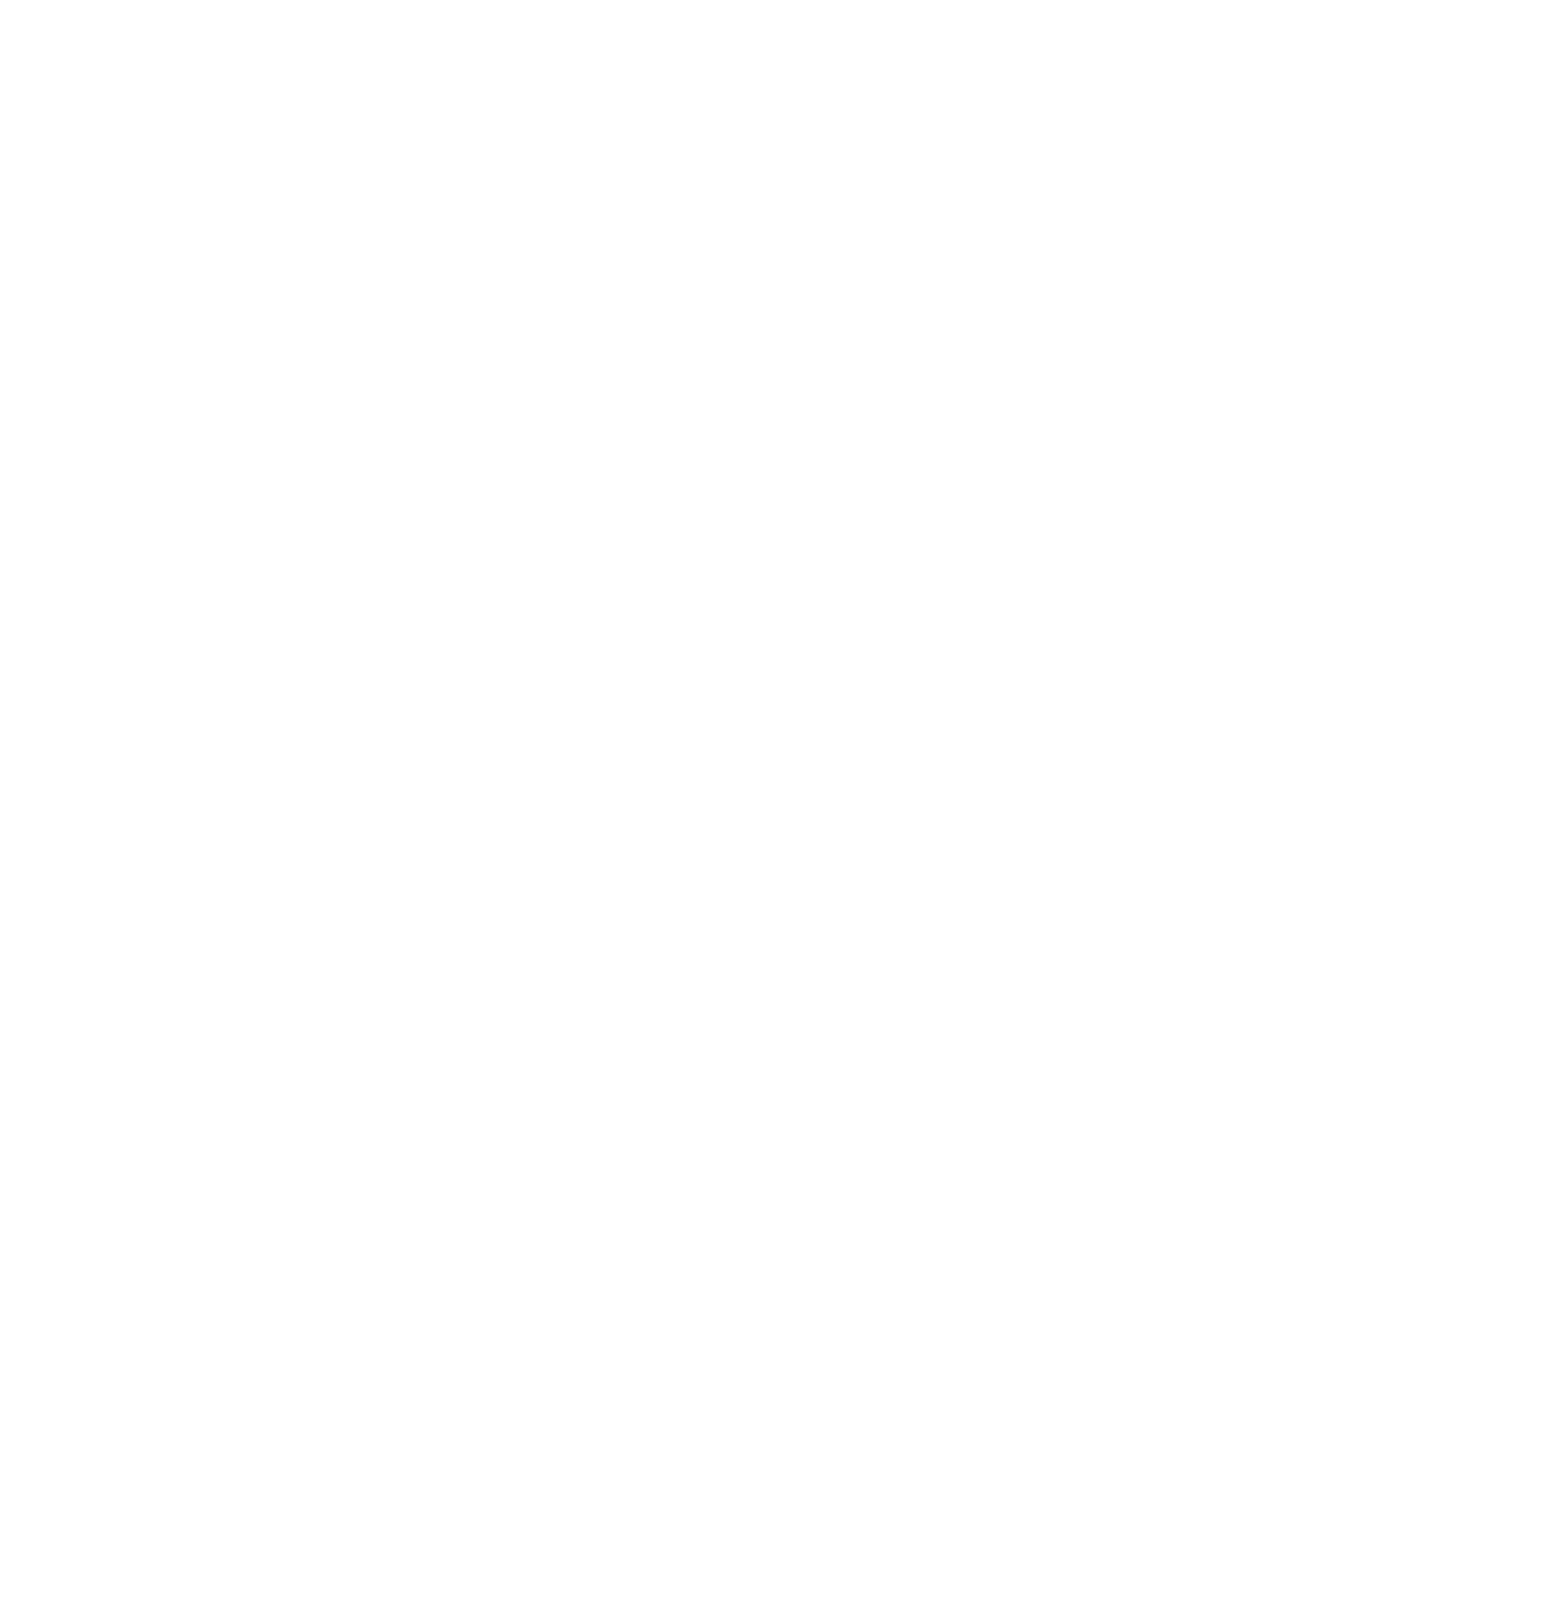 Nestlé India logo large for dark backgrounds (transparent PNG)